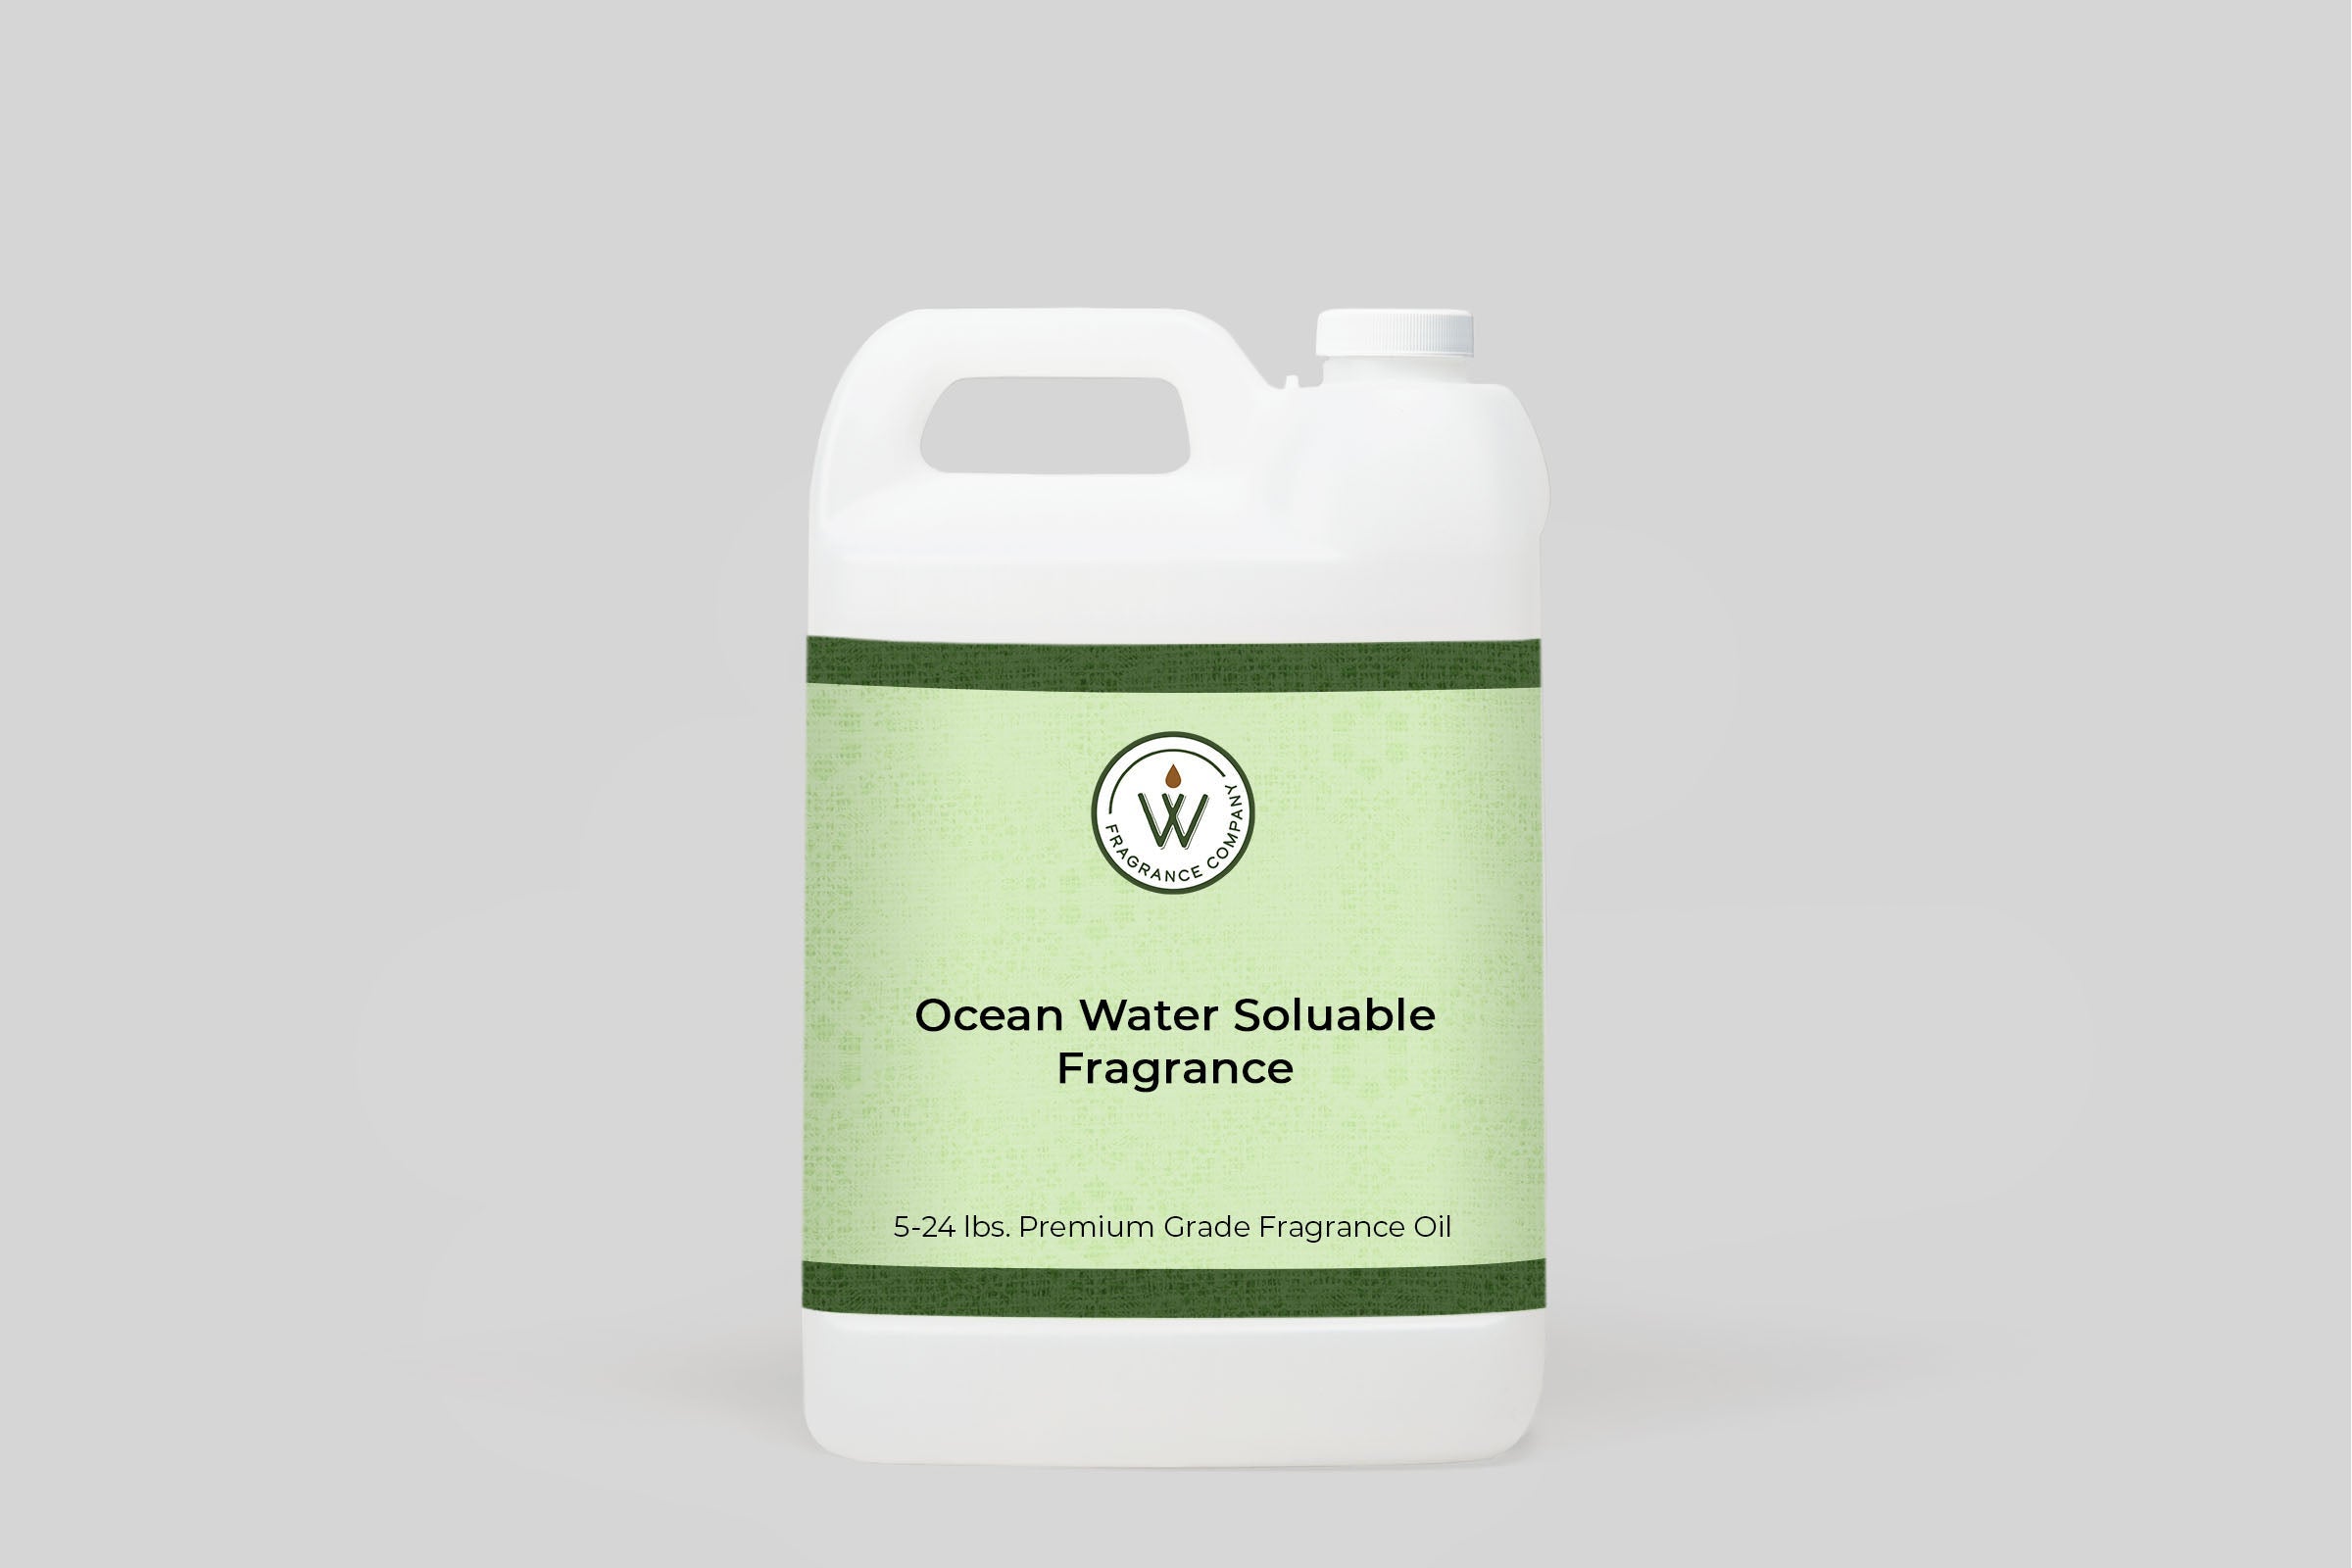 Ocean Water Soluble Fragrance